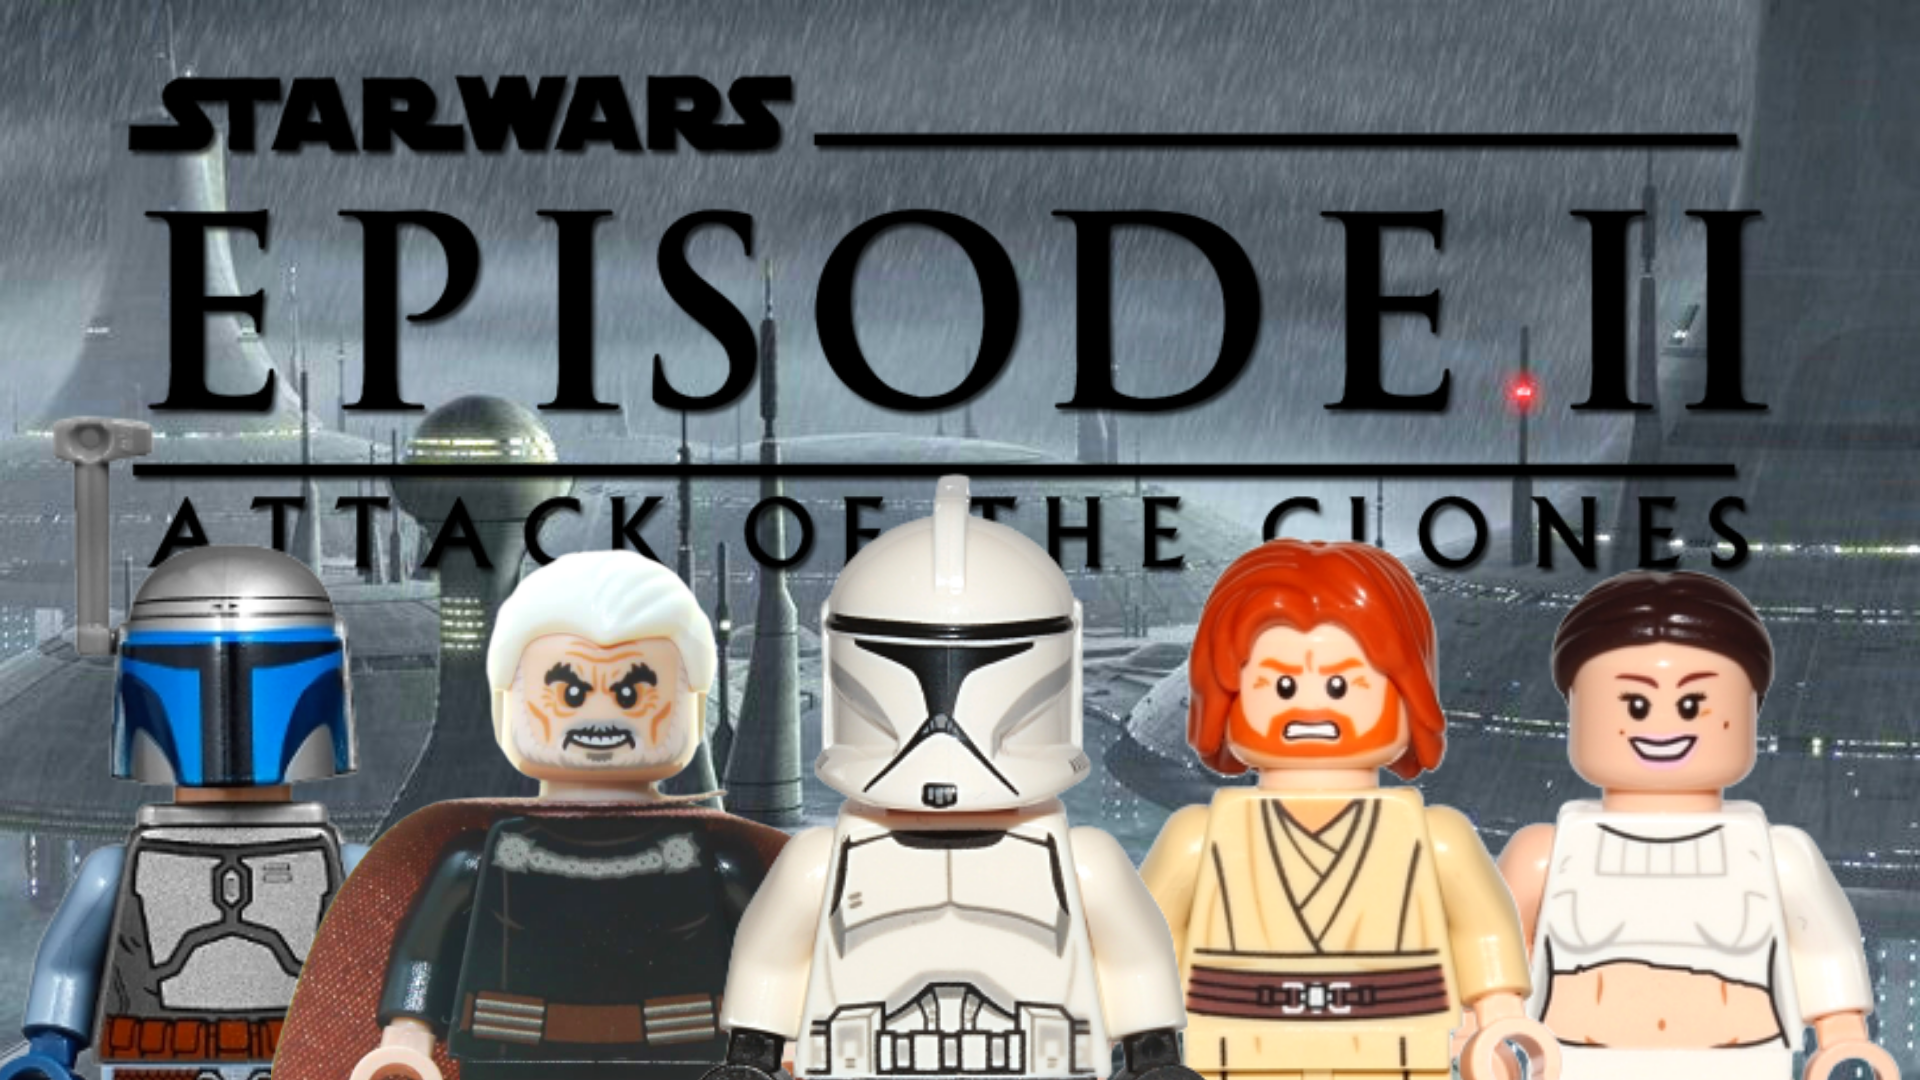 lego star wars clone wars 2